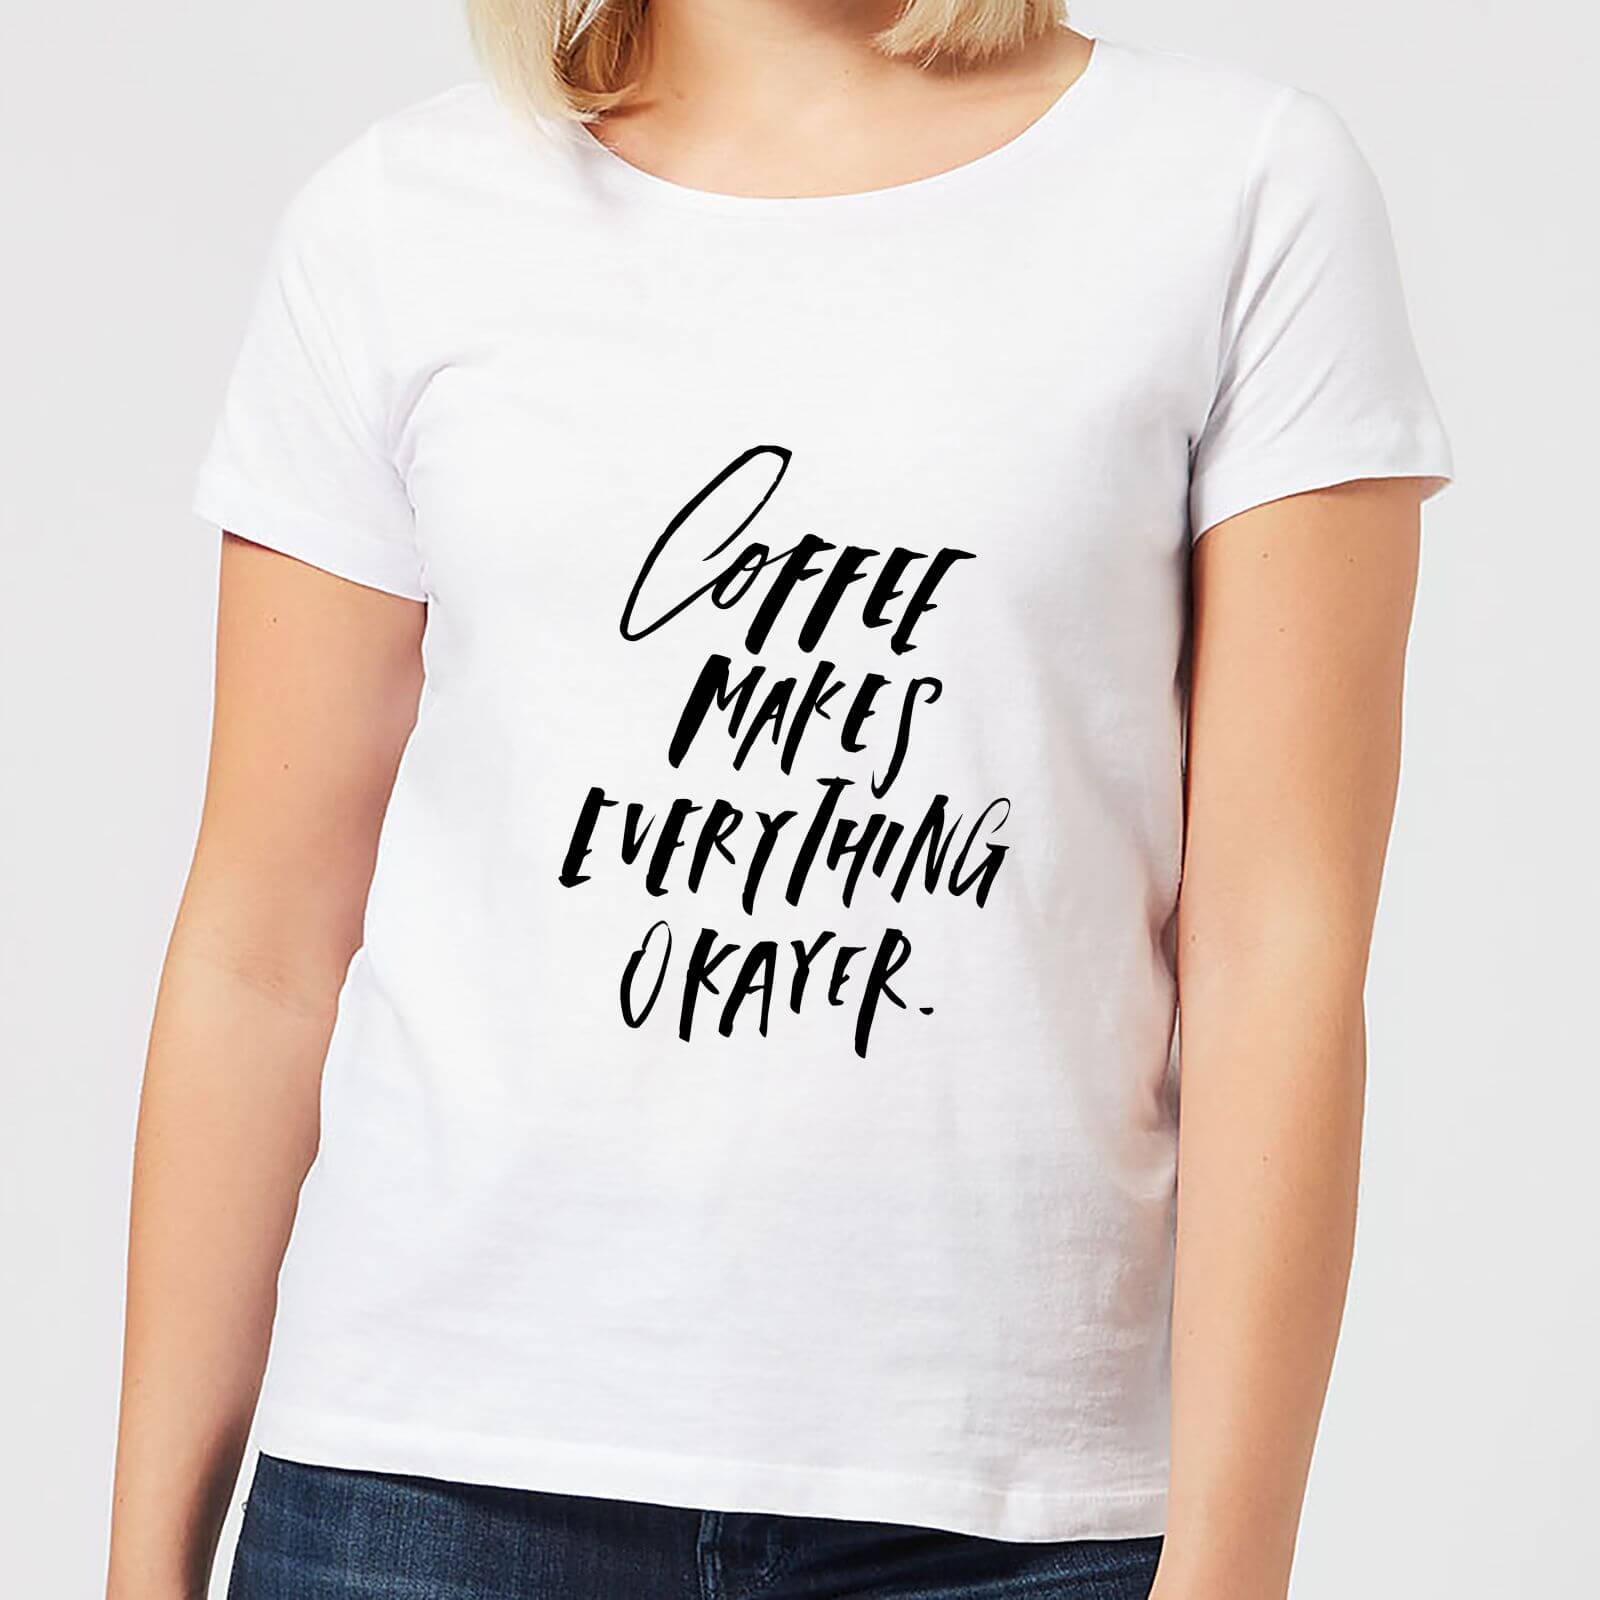 Coffee Makes Everything Okayer Women's T-Shirt - White - XL - White